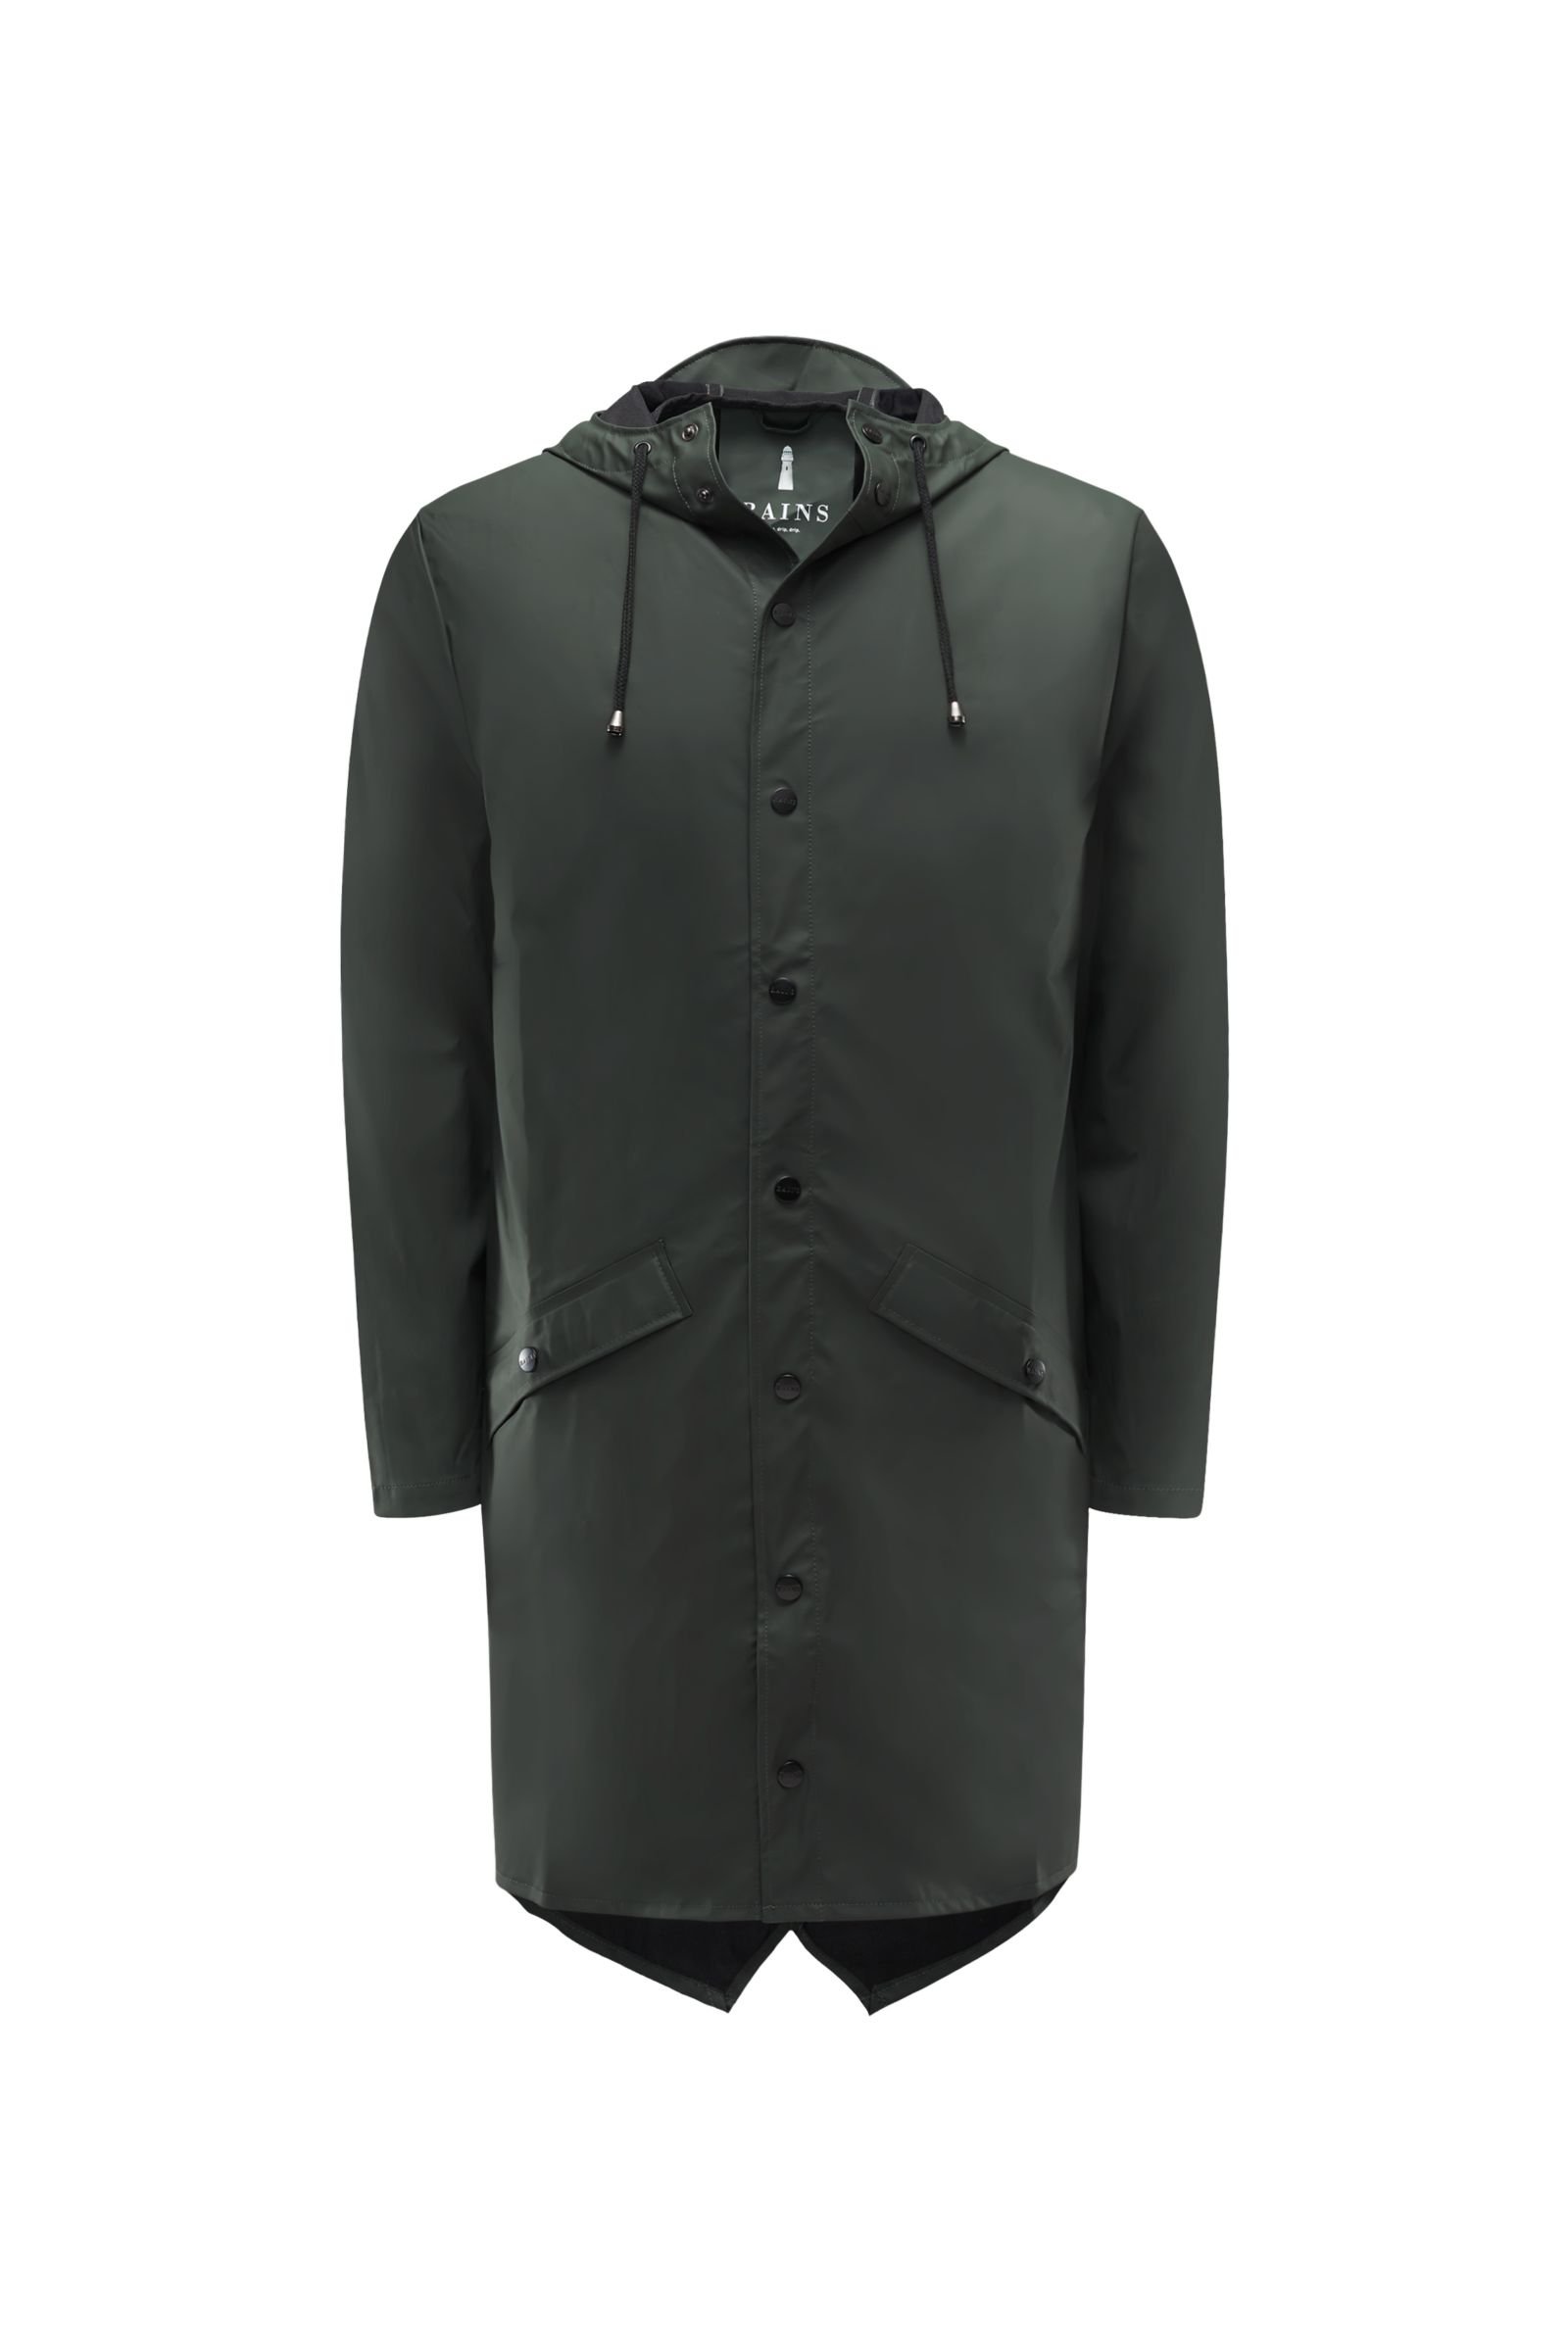 Rain coat 'Long Jacket' olive